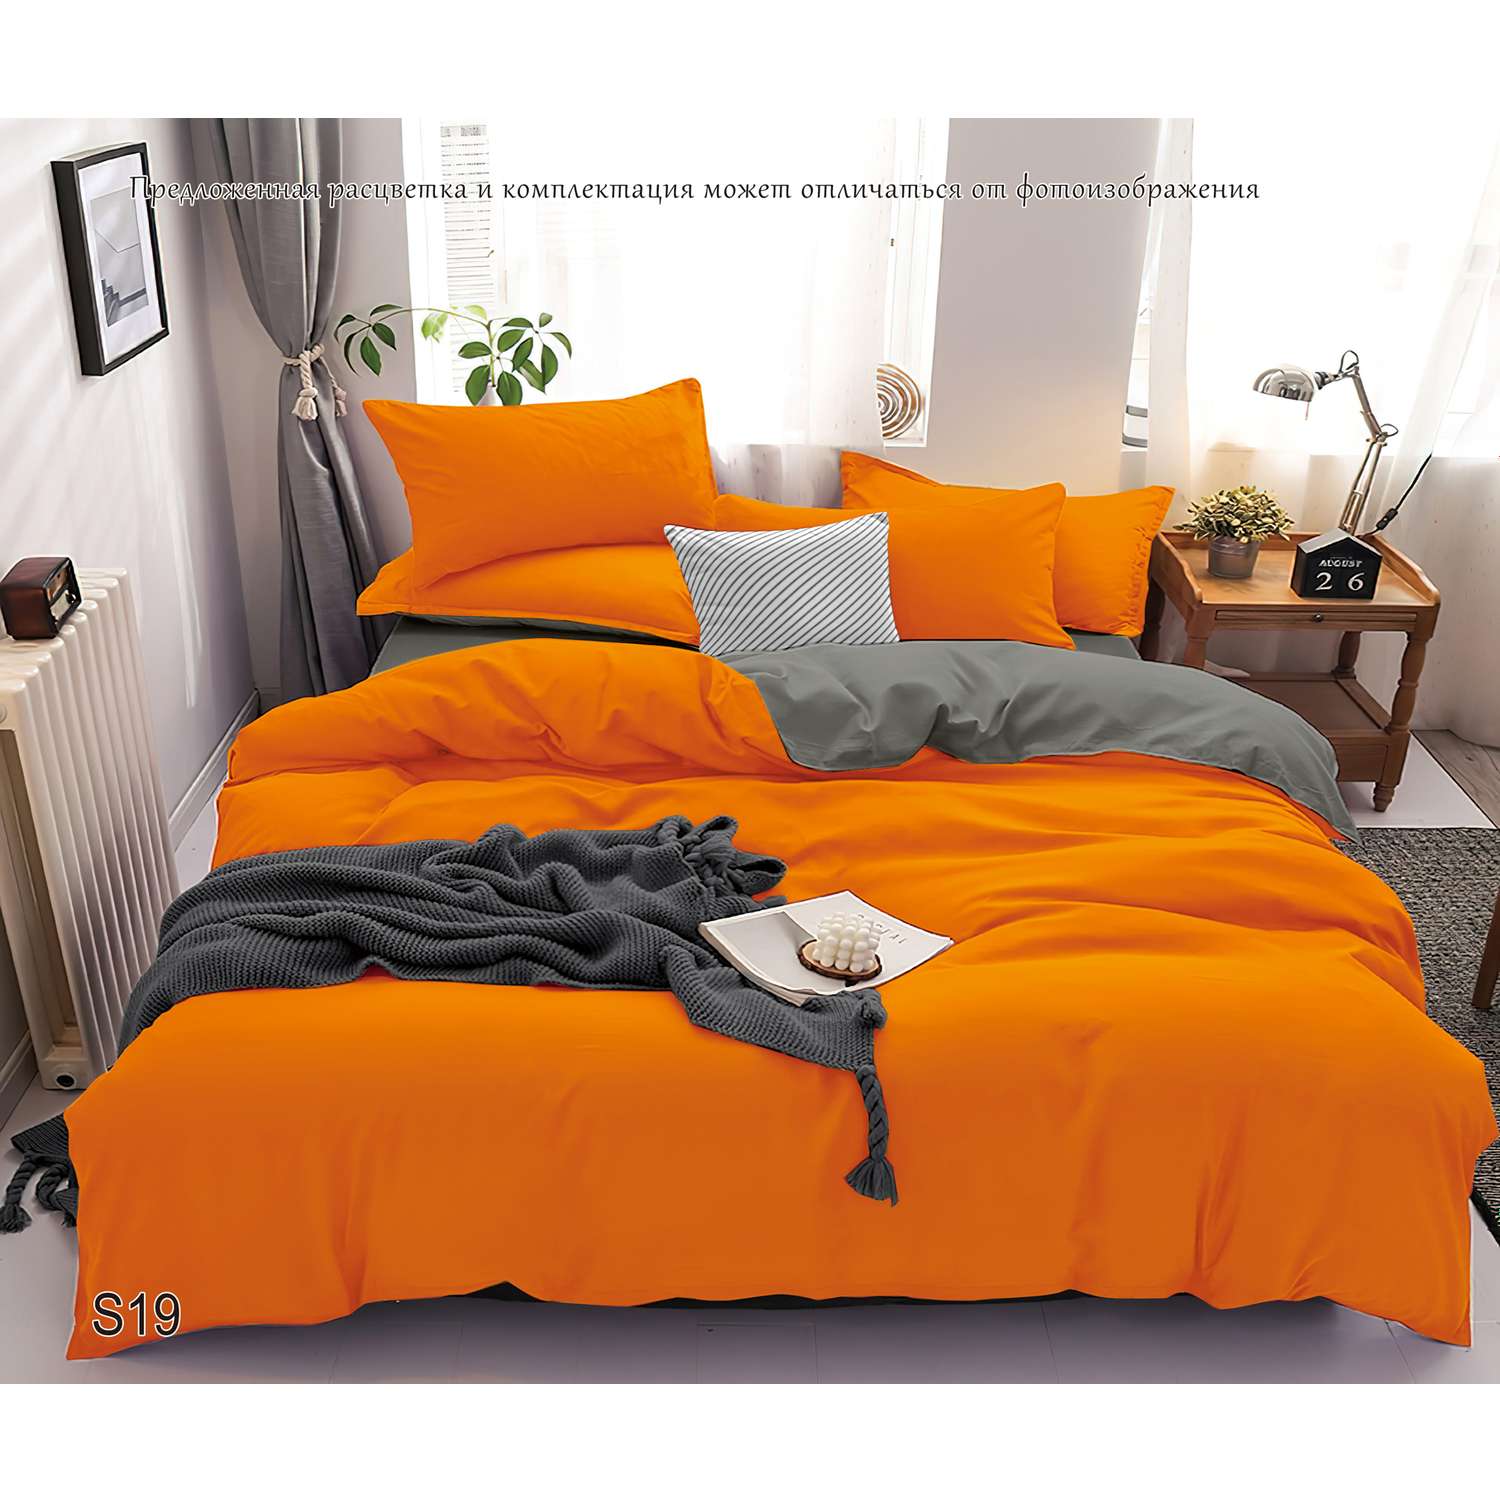 Комплект постельного белья PAVLine Манетти полисатин 1.5 сп. оранжевый/серый S19 - фото 2